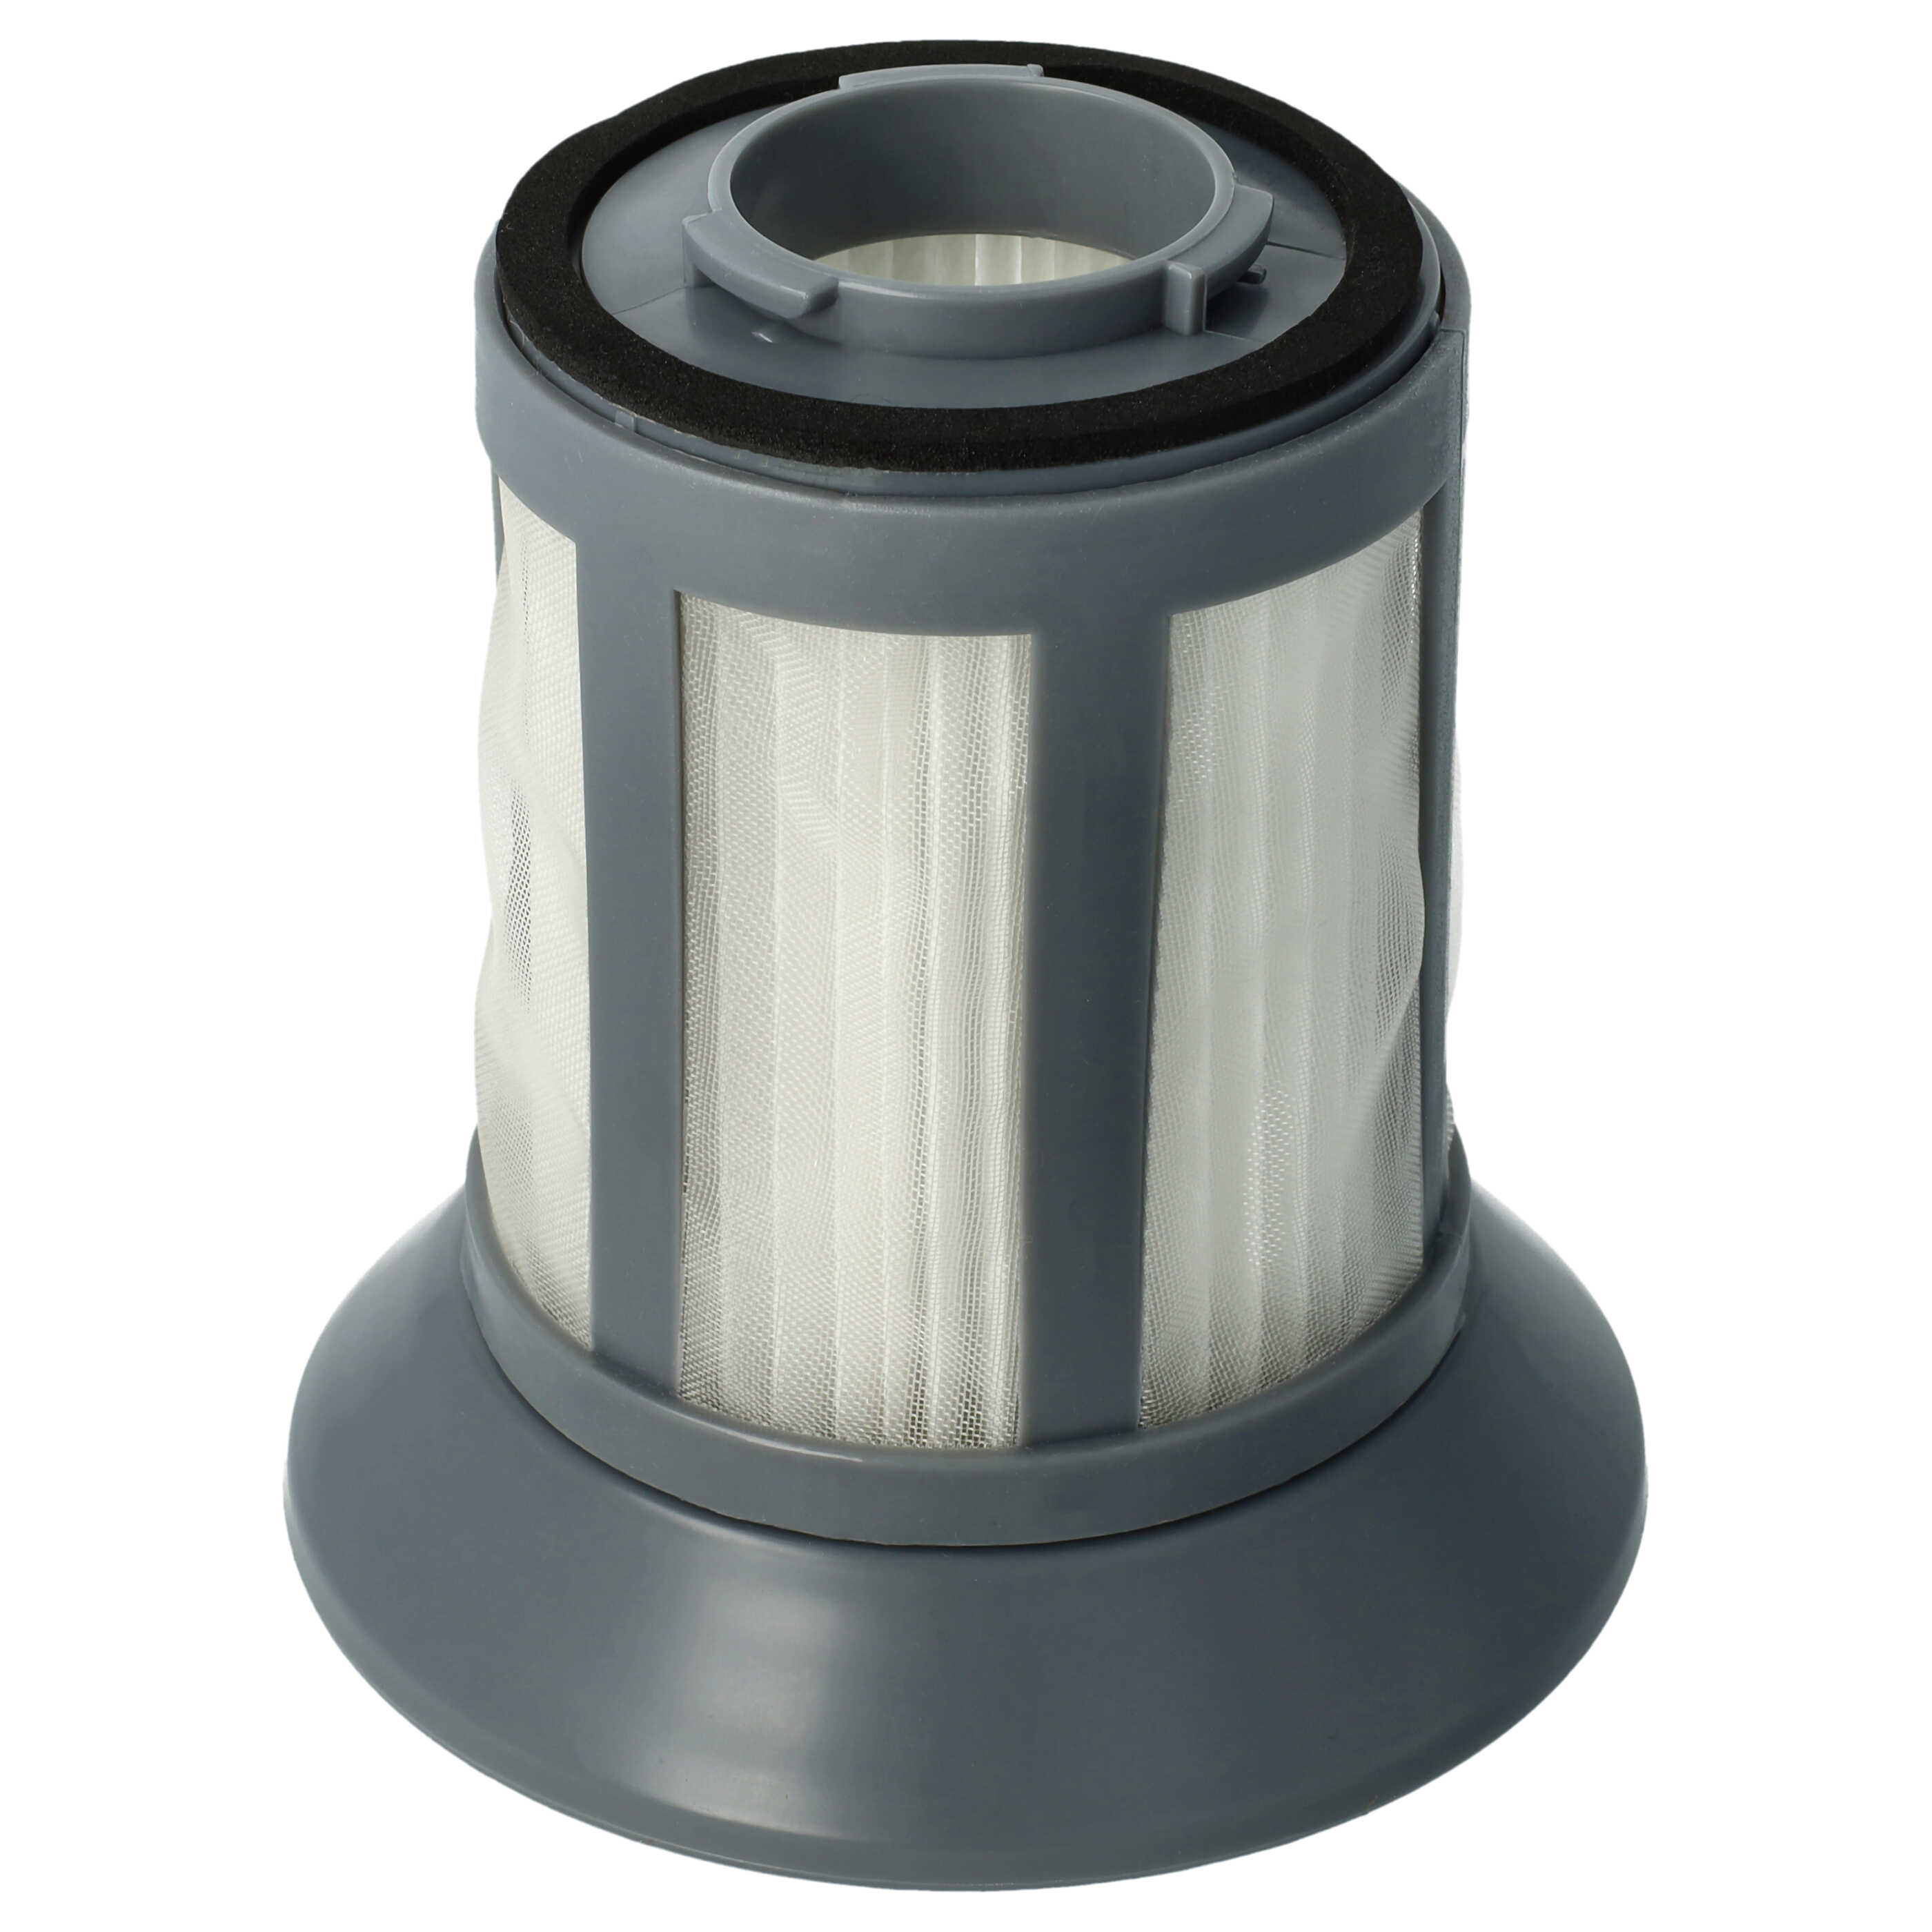 Filtro para aspiradora BS 9012 CB Eco Cyclon Bomann, etc. - elemento filtrante (filtro nailon + filtro HEPA) n